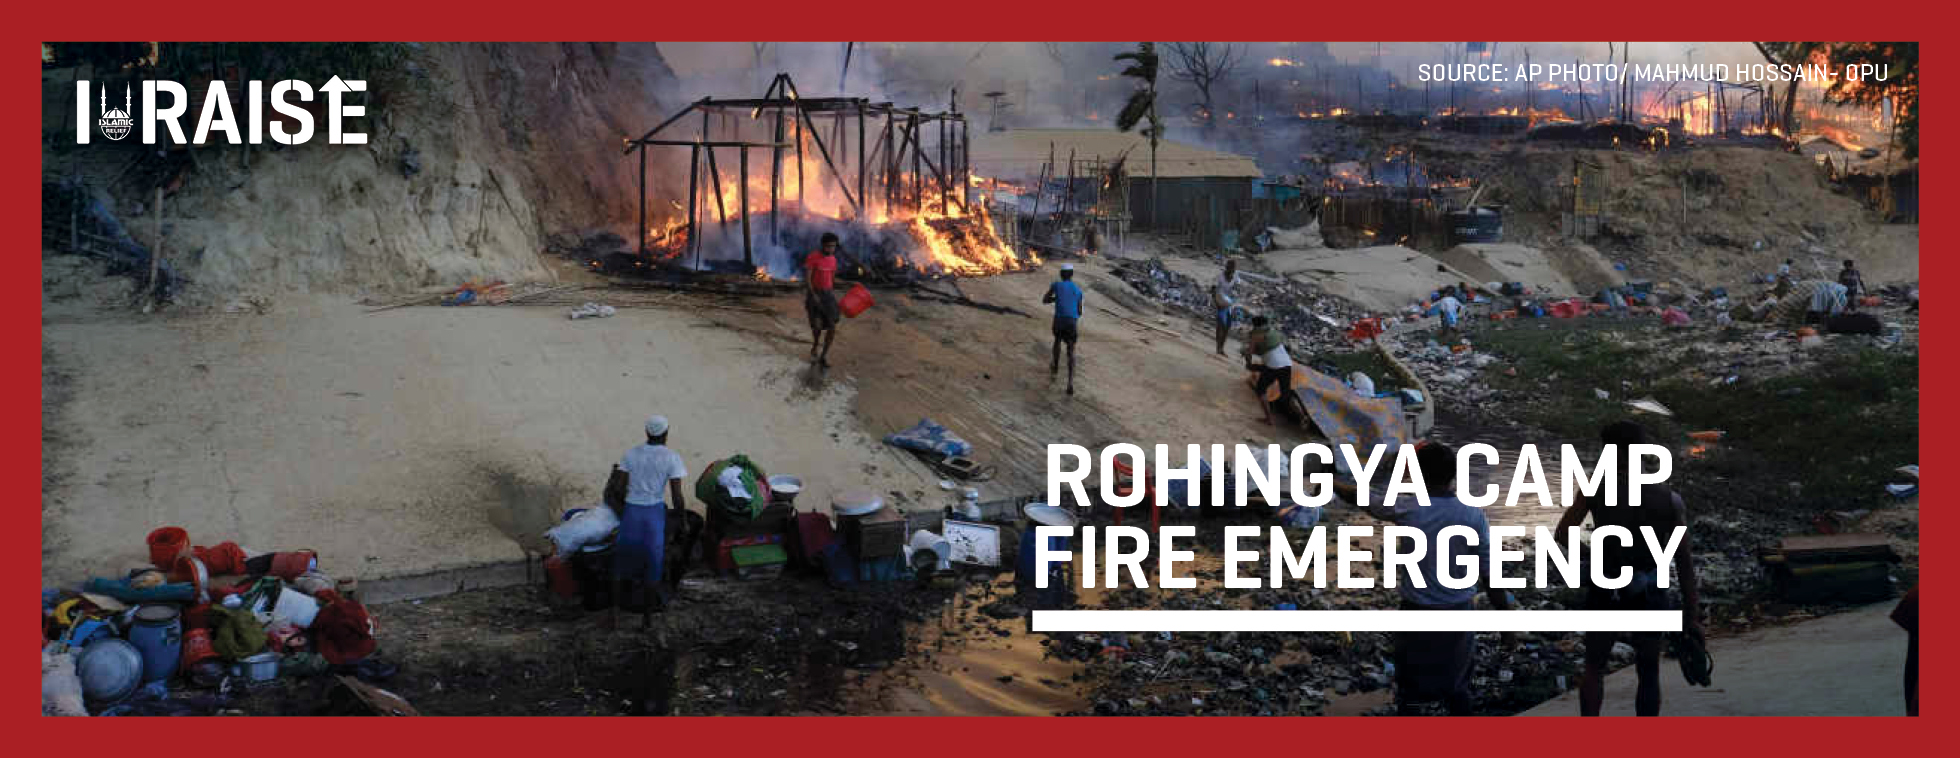 IRaise Rohingya Camp Fire Emergency 2023